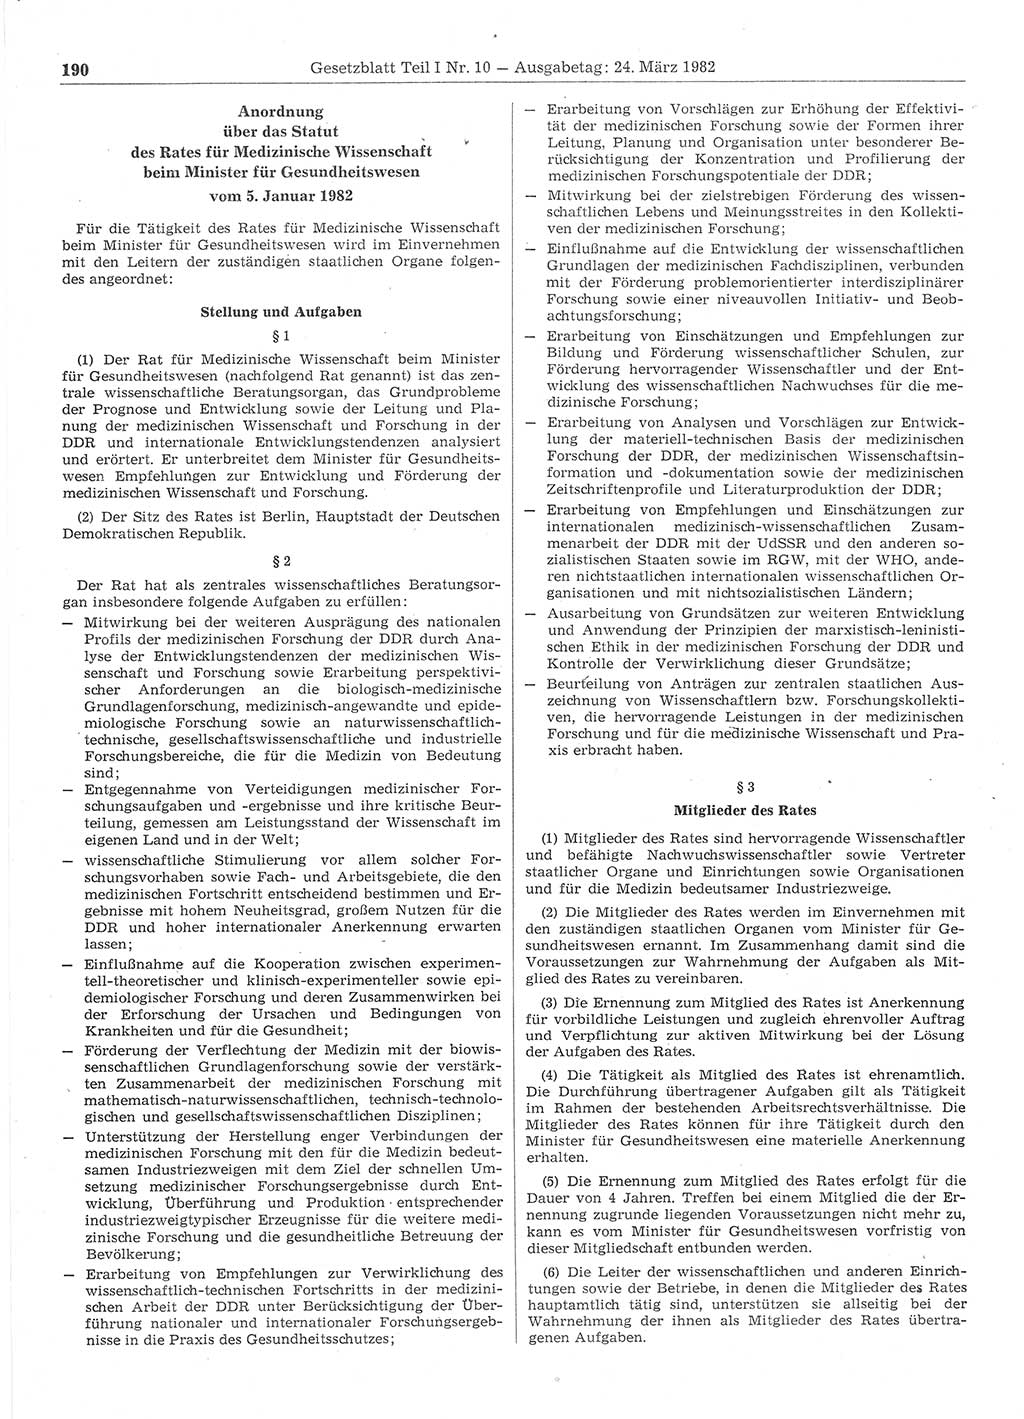 Gesetzblatt (GBl.) der Deutschen Demokratischen Republik (DDR) Teil Ⅰ 1982, Seite 190 (GBl. DDR Ⅰ 1982, S. 190)